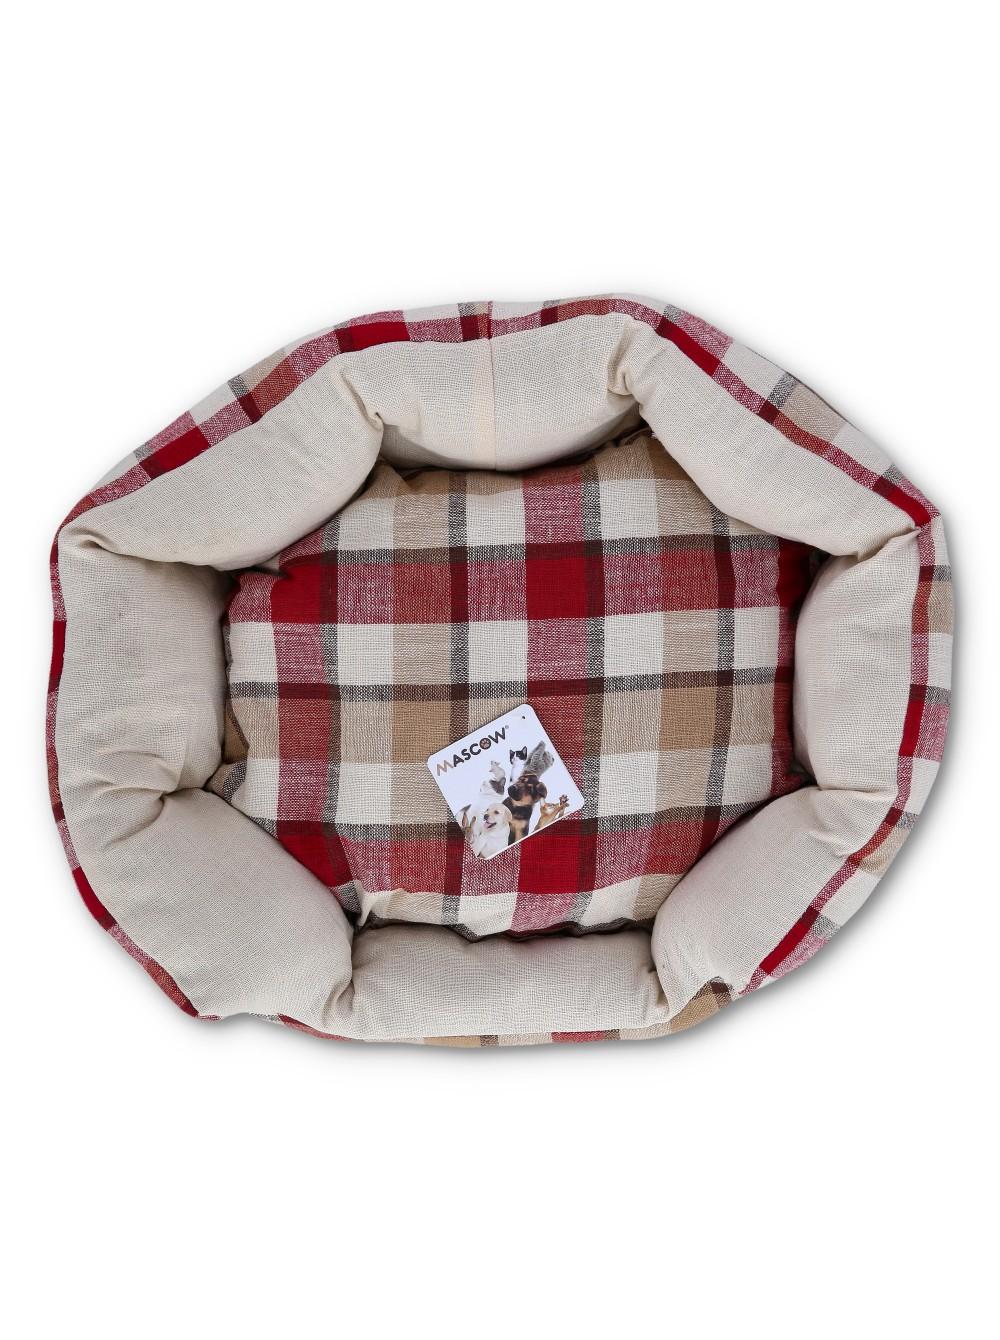 Selected image for MASCOW Ovalni krevet za kućne ljubimce crveni